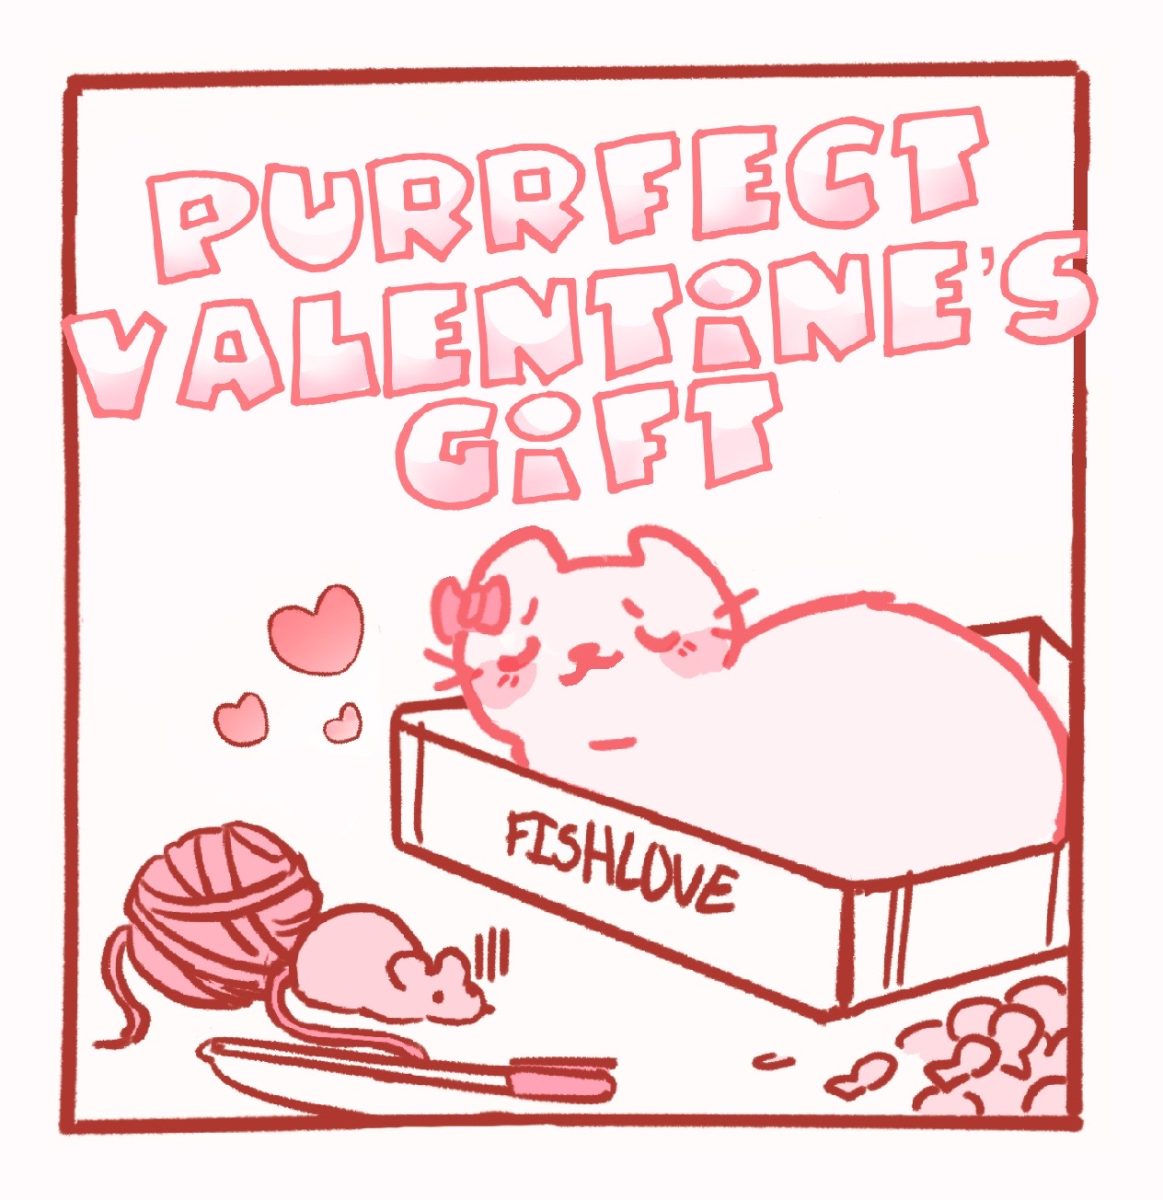 Purrfect Valentines Gift